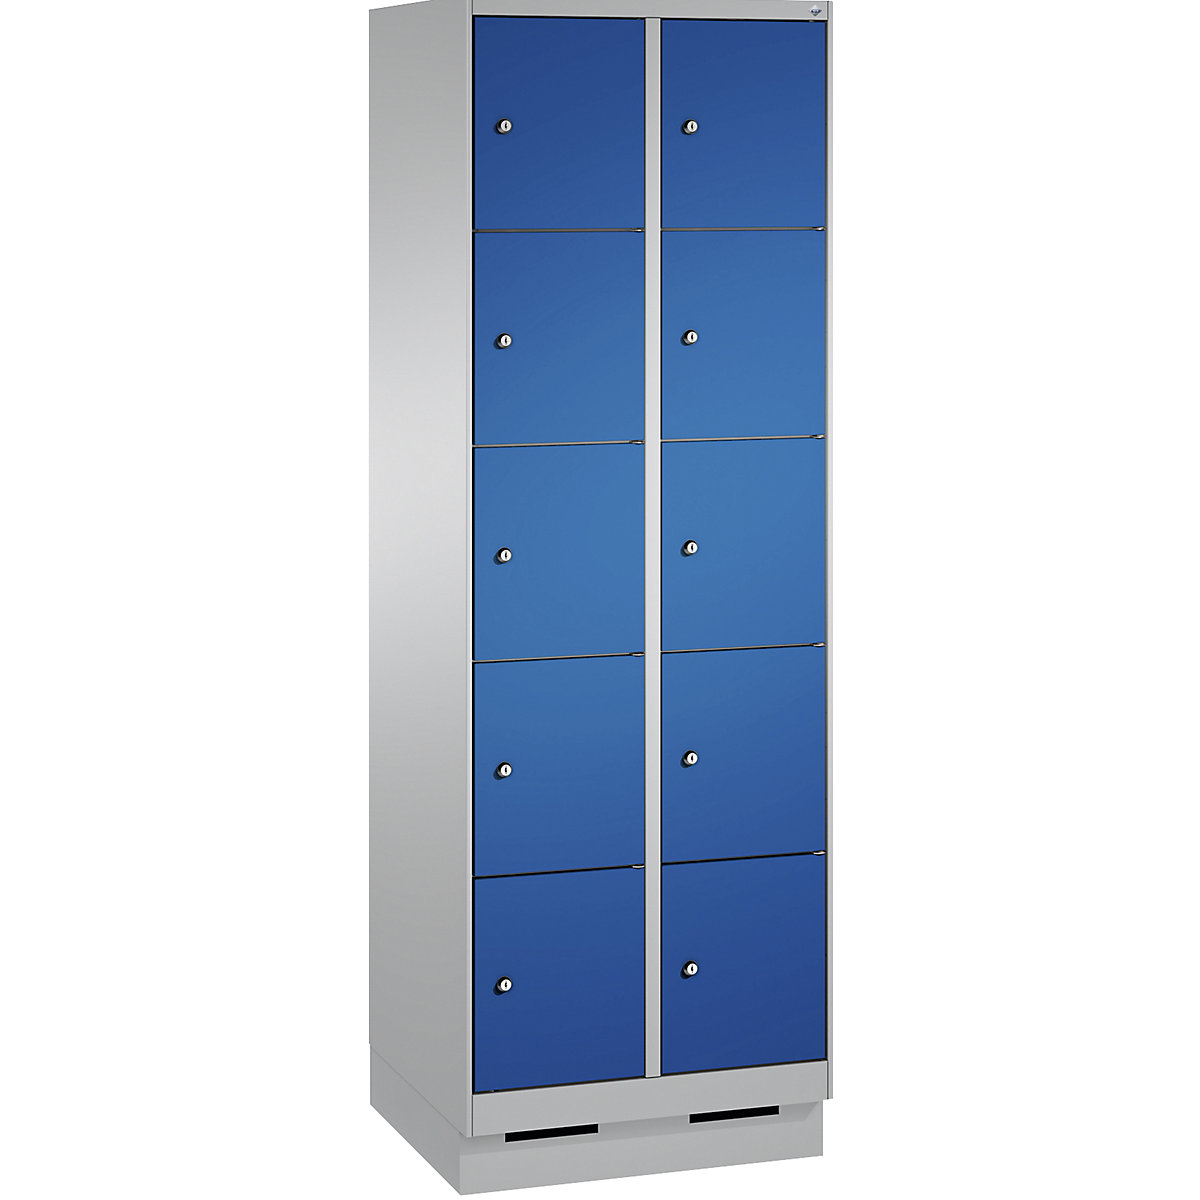 Armoire à casiers sur socle EVOLO – C+P, 2 compartiments, 5 casiers chacun, largeur compartiments 300 mm, aluminium / bleu gentiane-3